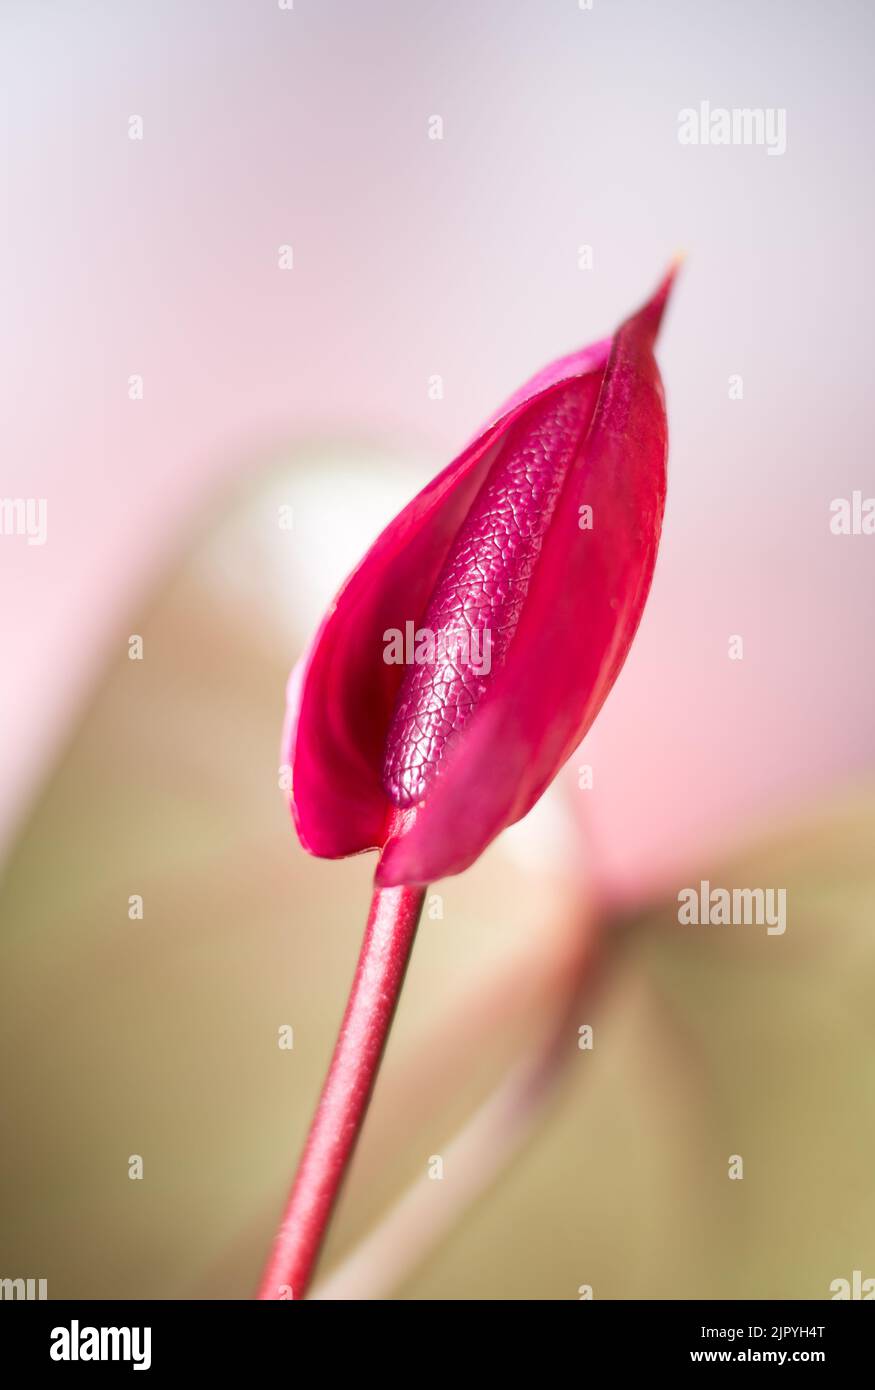 flor de anturio de color rojo oscuro, también conocida como flor de cola, flamenco y laceleaf, flor en forma de lágrima tomada en una profundidad de campo poco profunda, fondo borroso Foto de stock